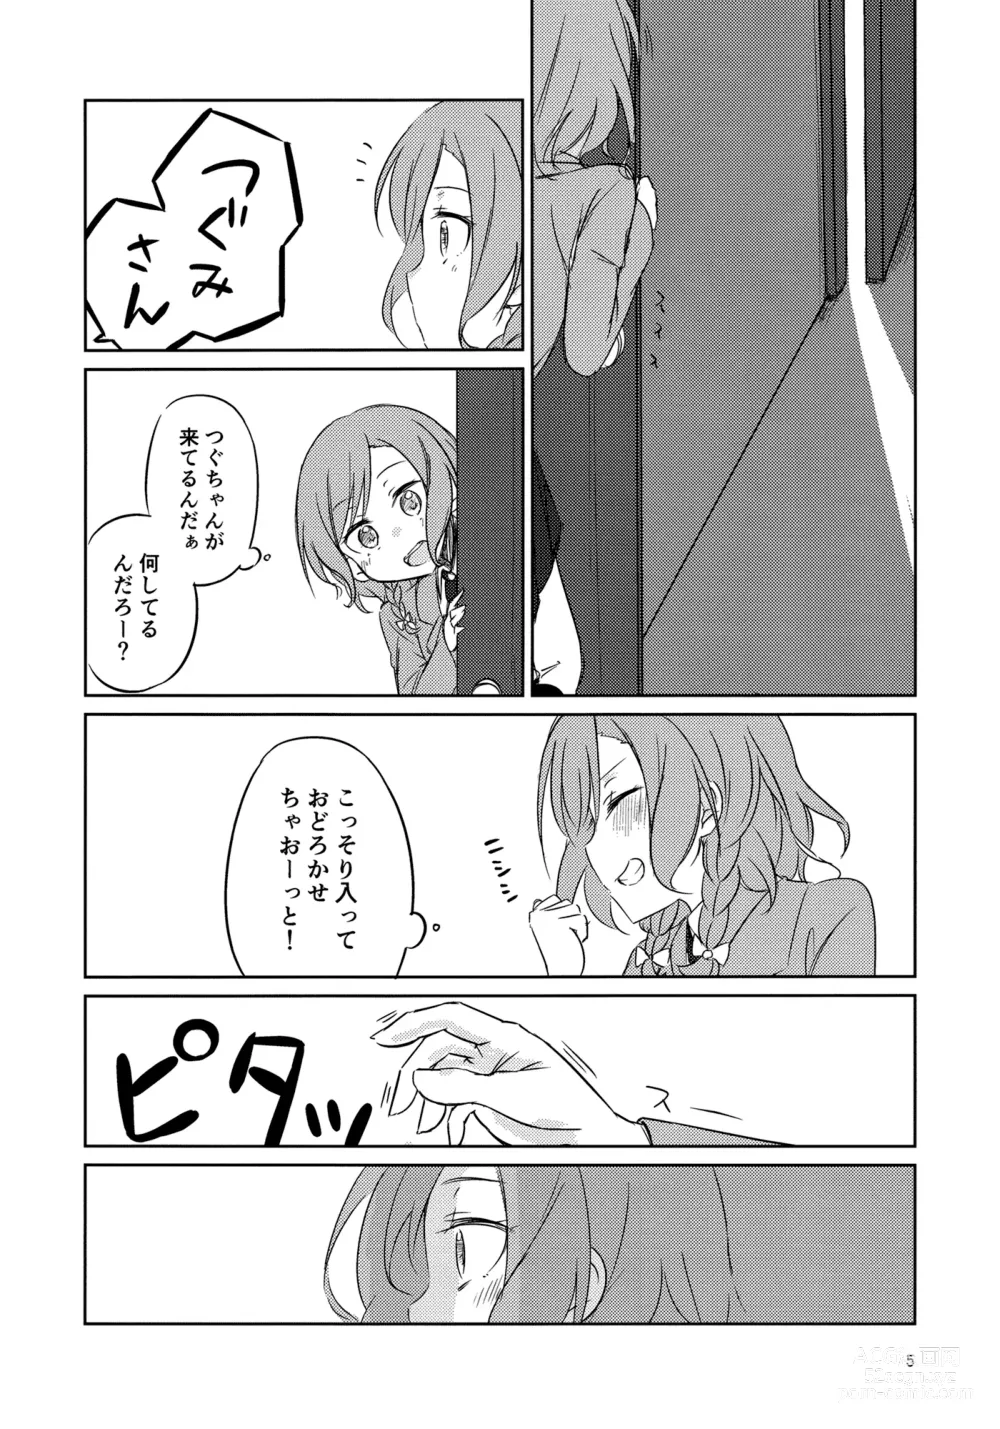 Page 4 of doujinshi Yoru ni Tori o Mita